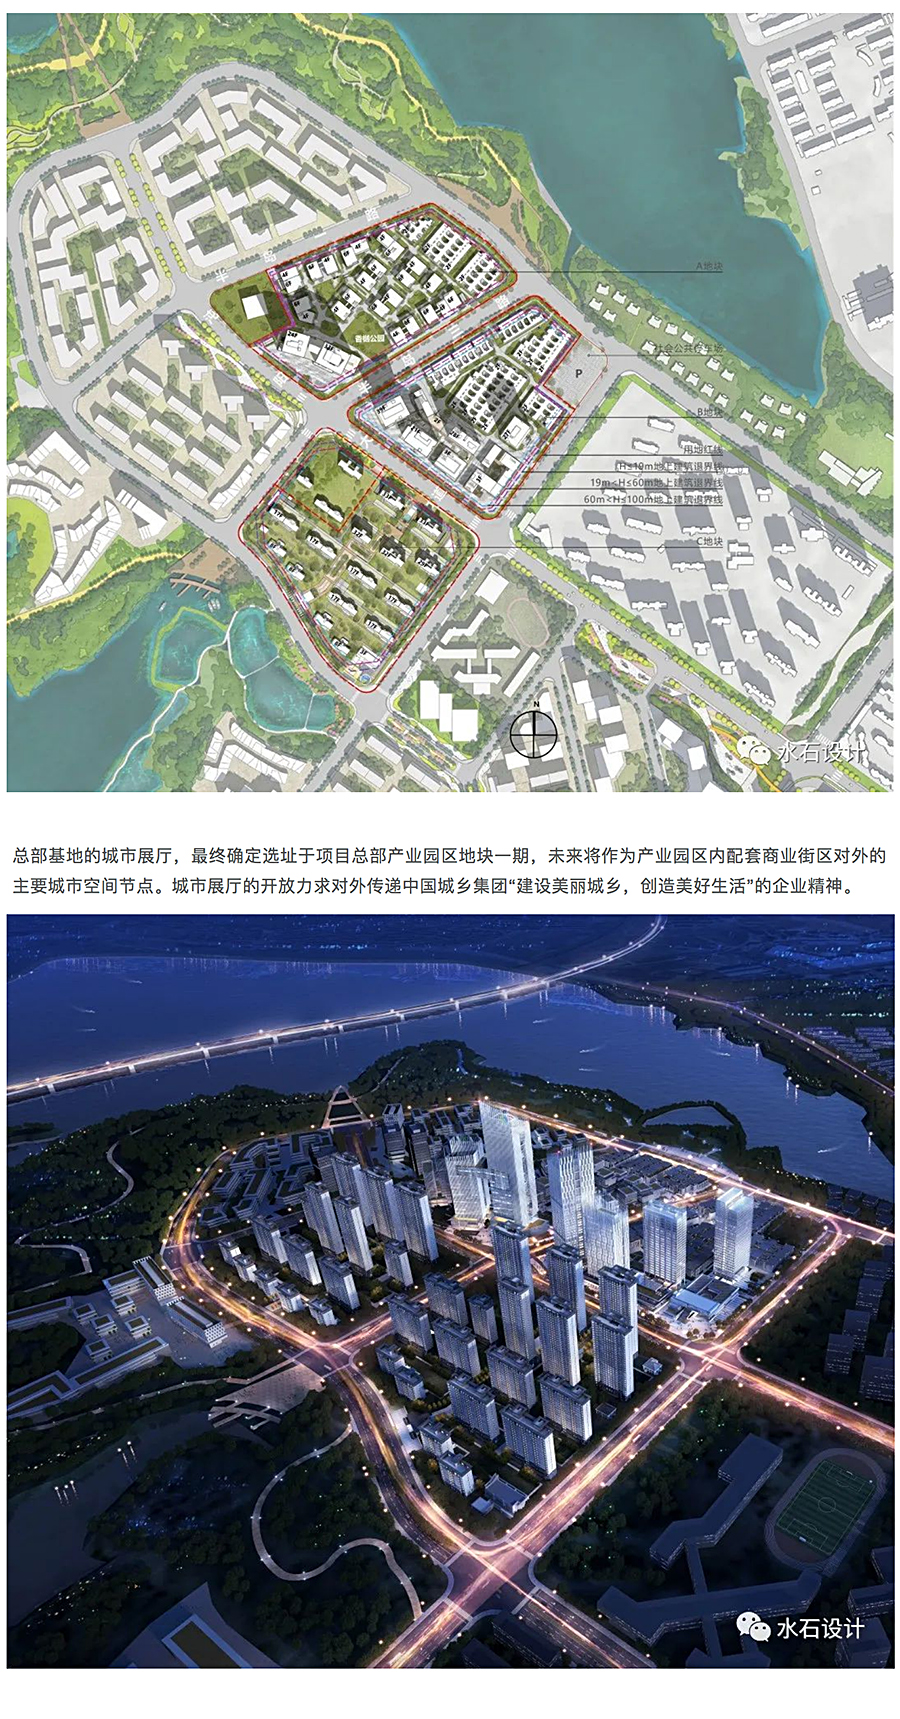 建构立体的城市社区公园-_-中国城乡总部经济产业园城市展厅_0002_图层-3.jpg